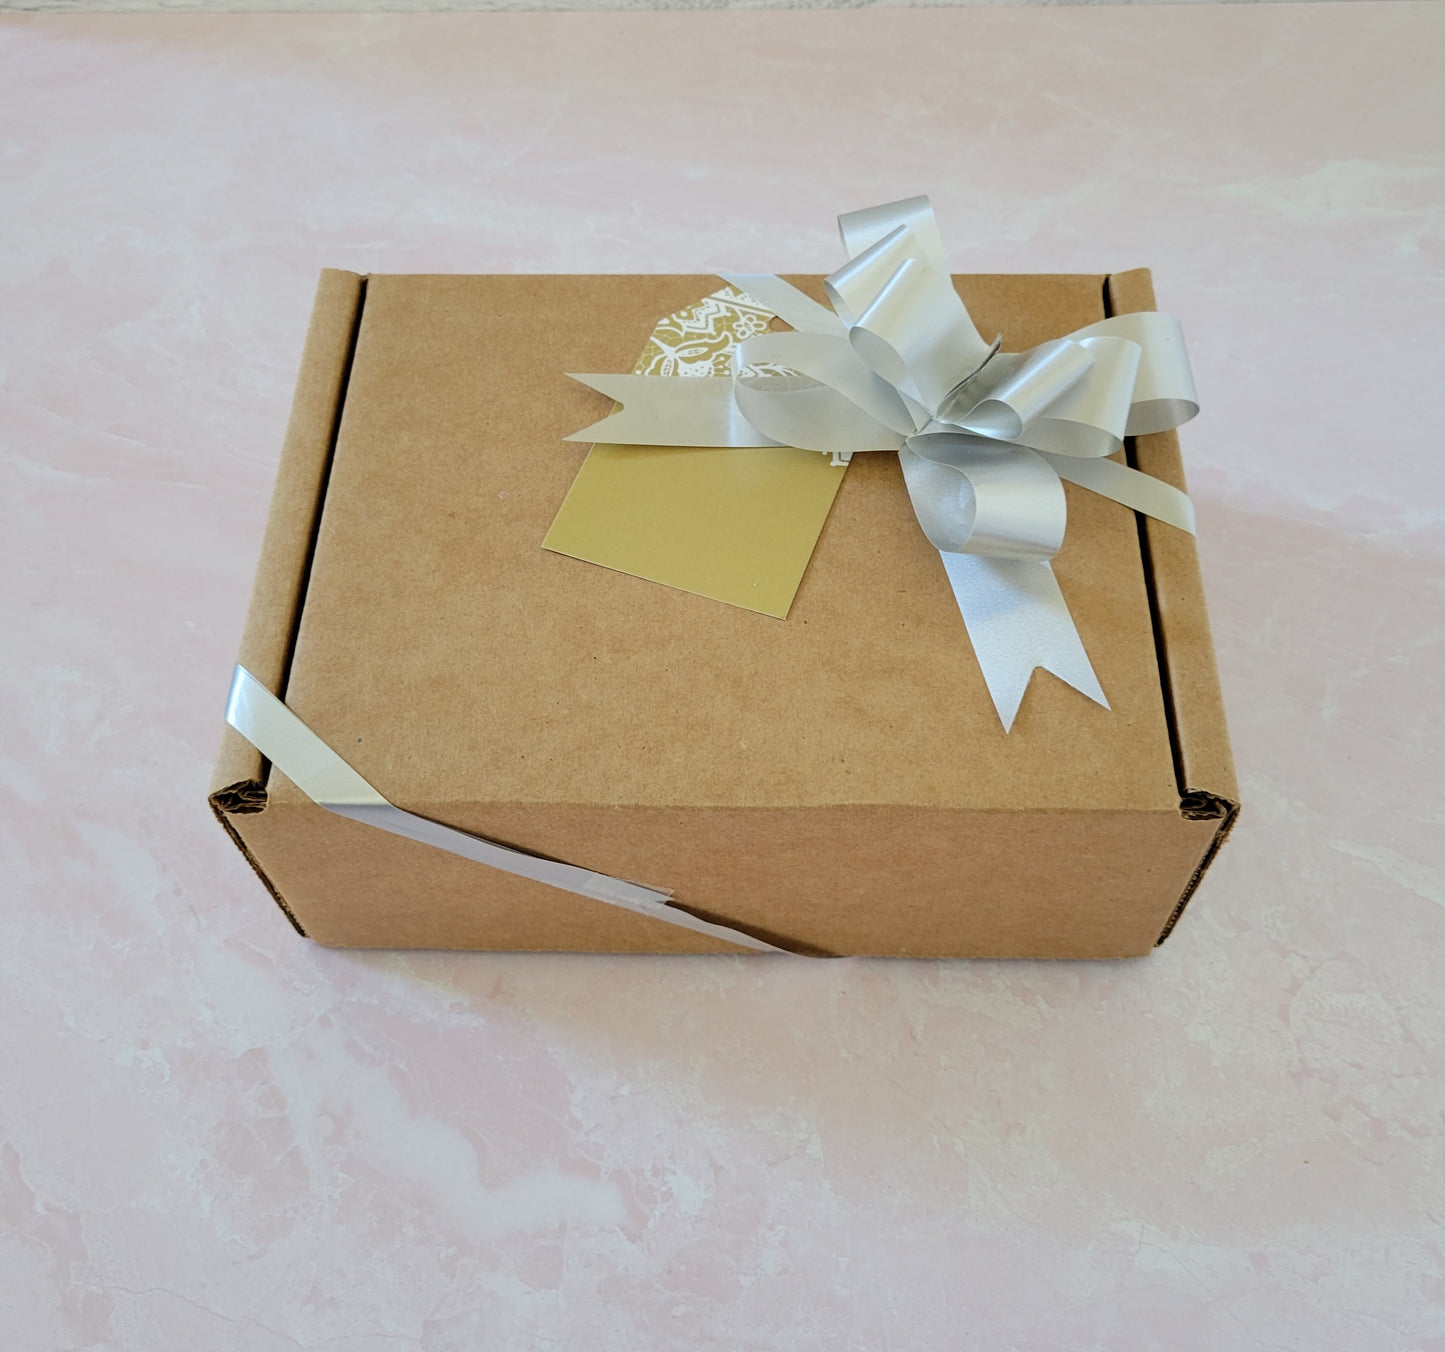 Women's Lavender Spa Gift Box